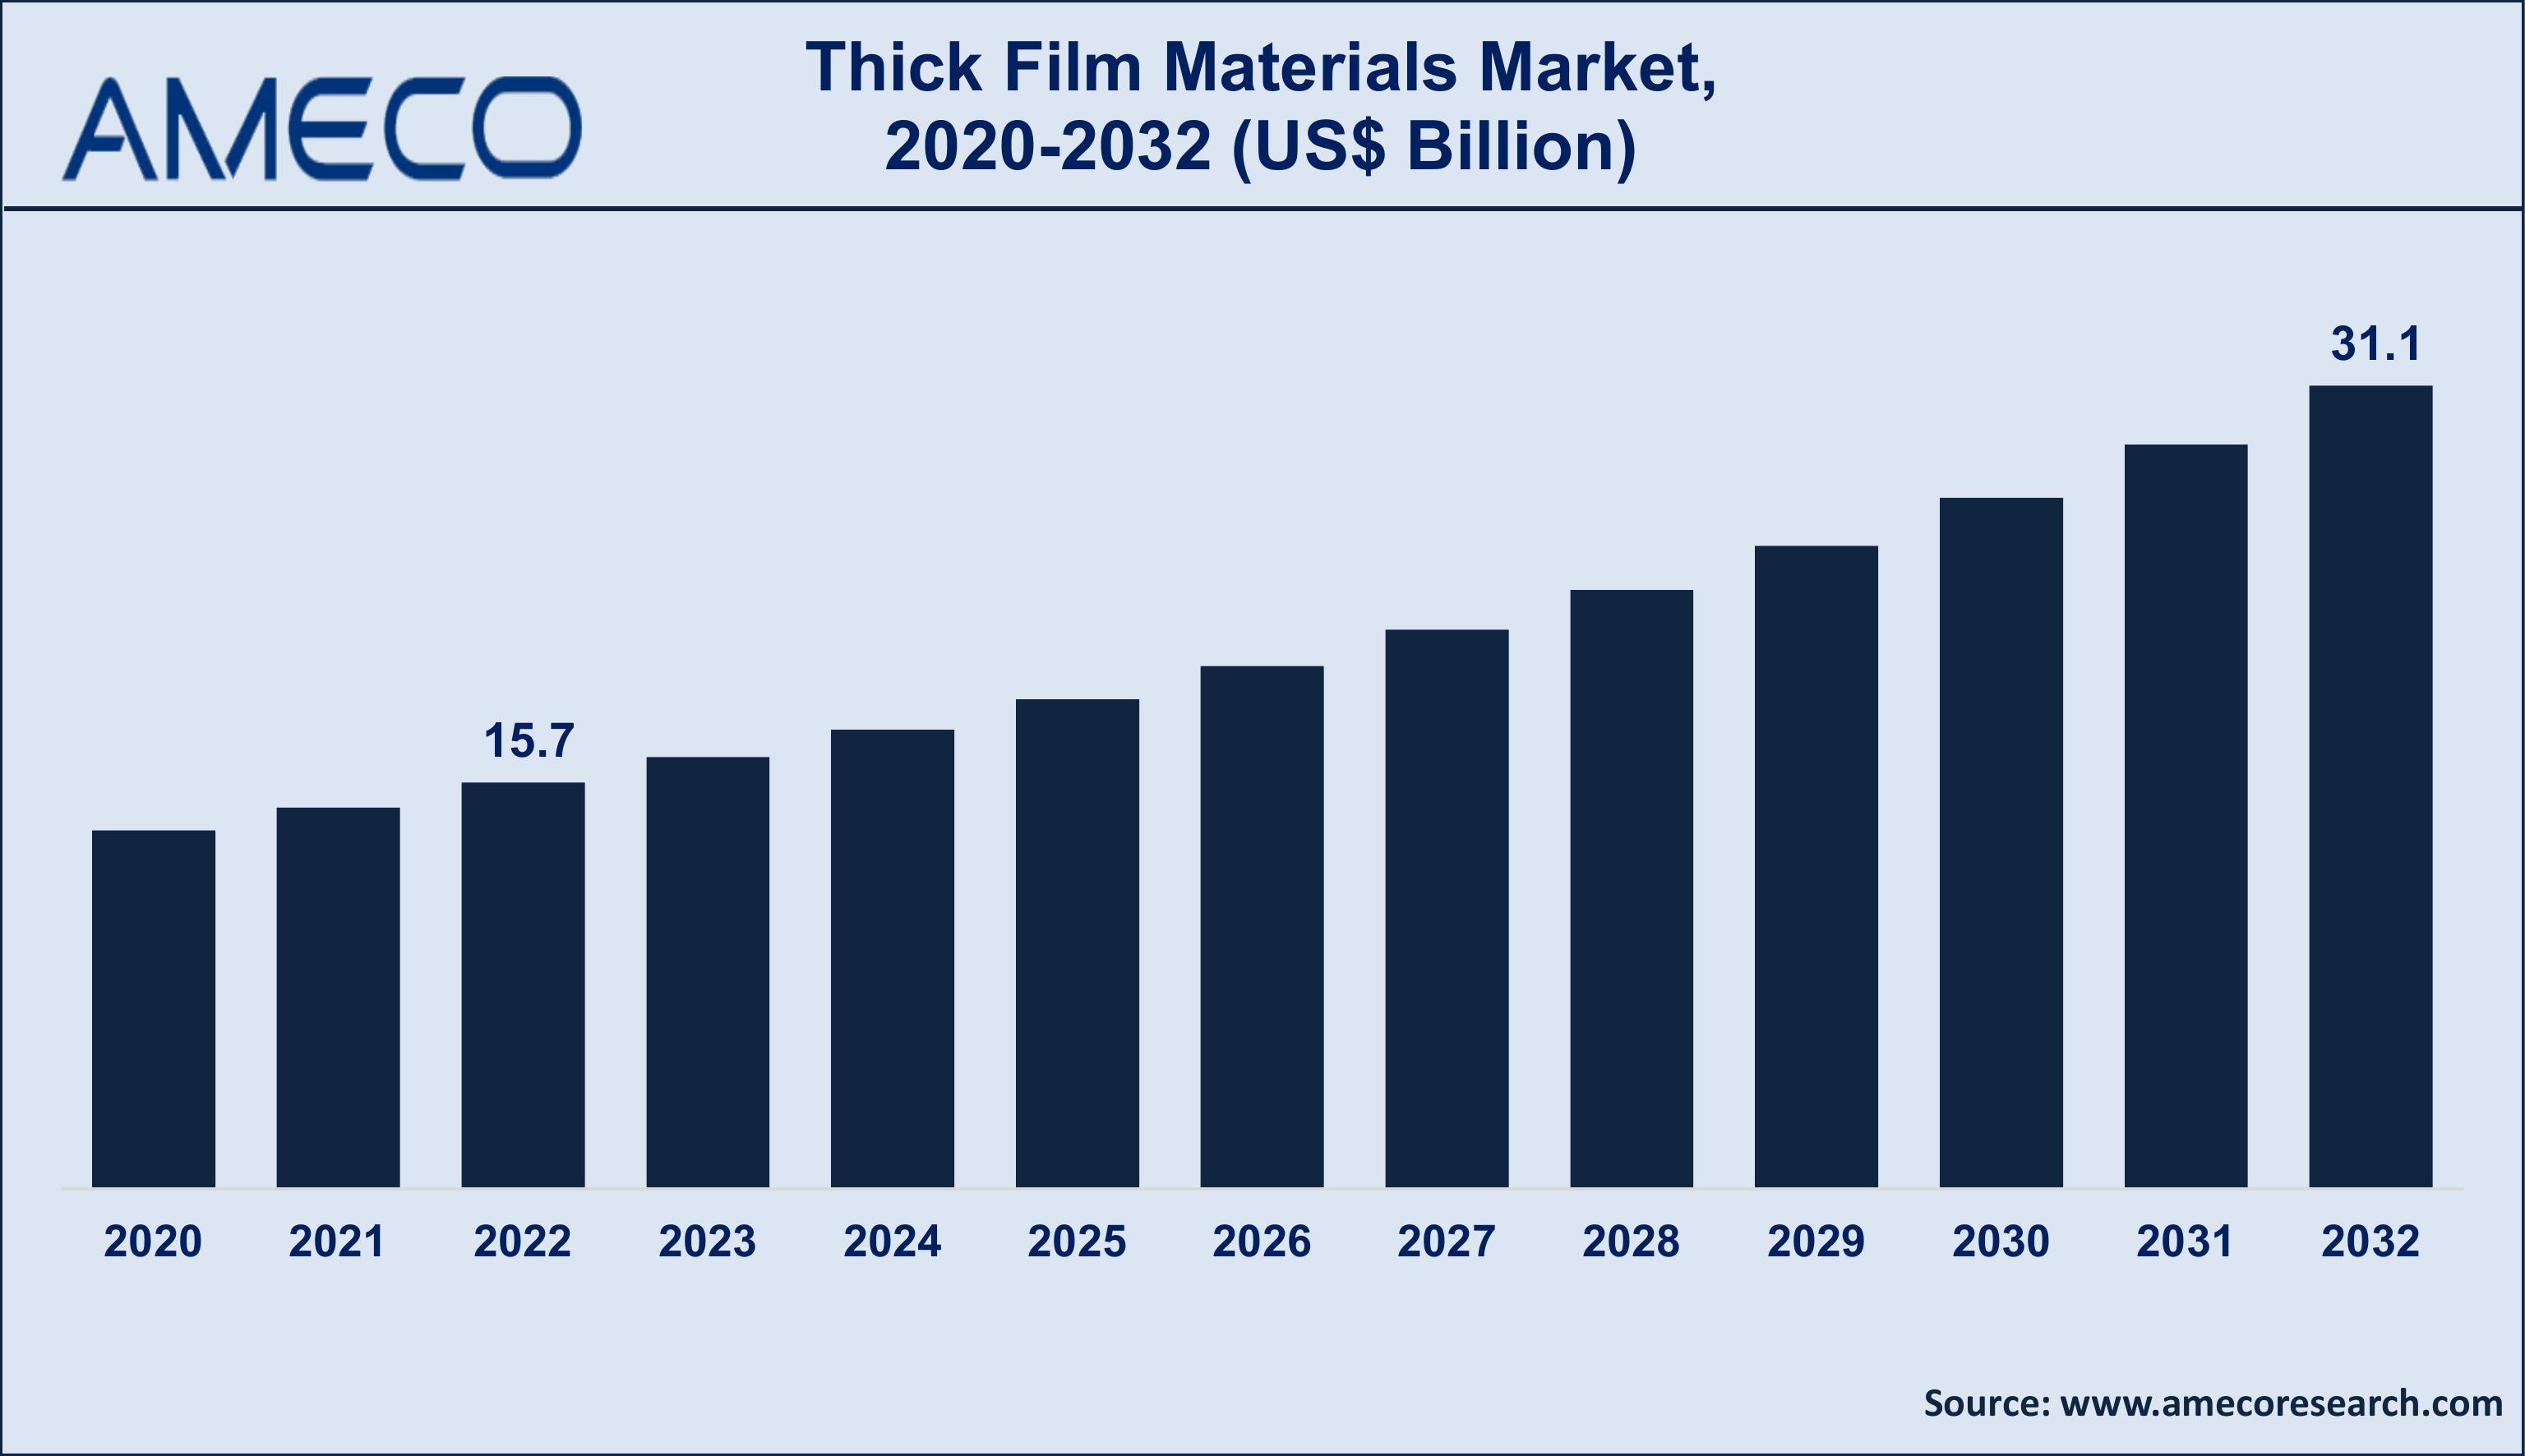 Thick Film Materials Market Dynamics